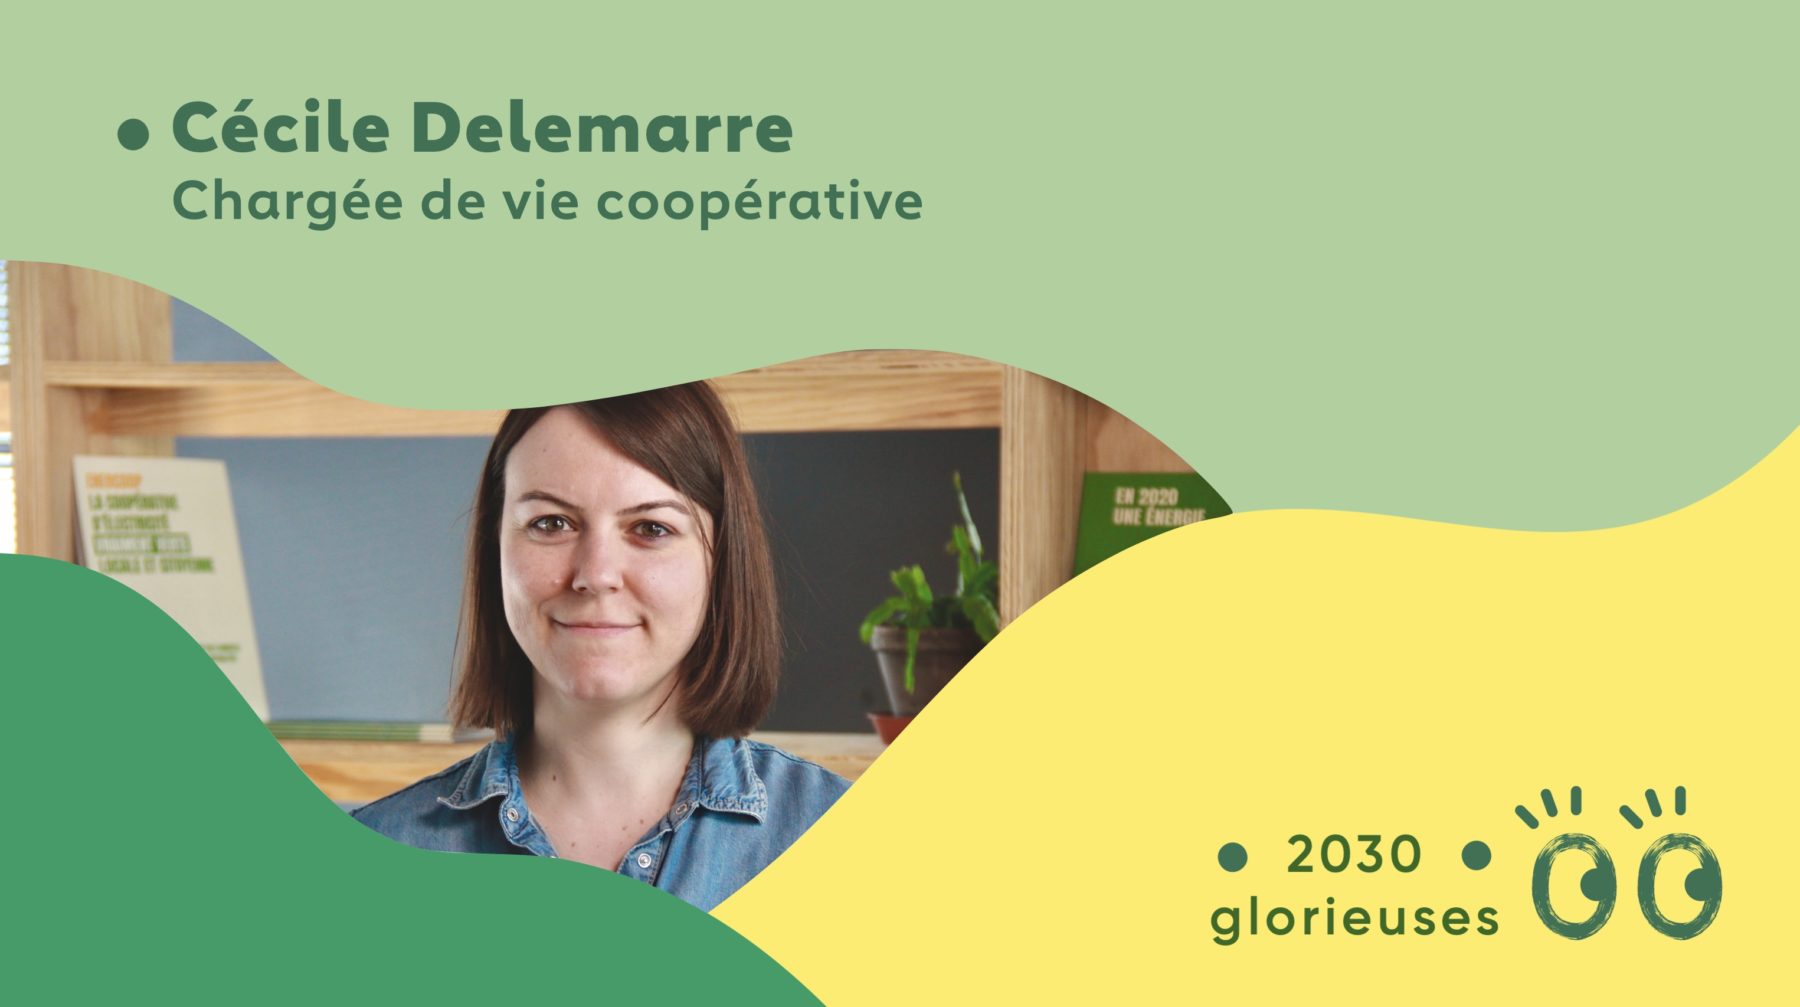 2030 Glorieuses #107 : Cécile Delemarre : “Coopérer, ça s'apprend tout au long de la vie."